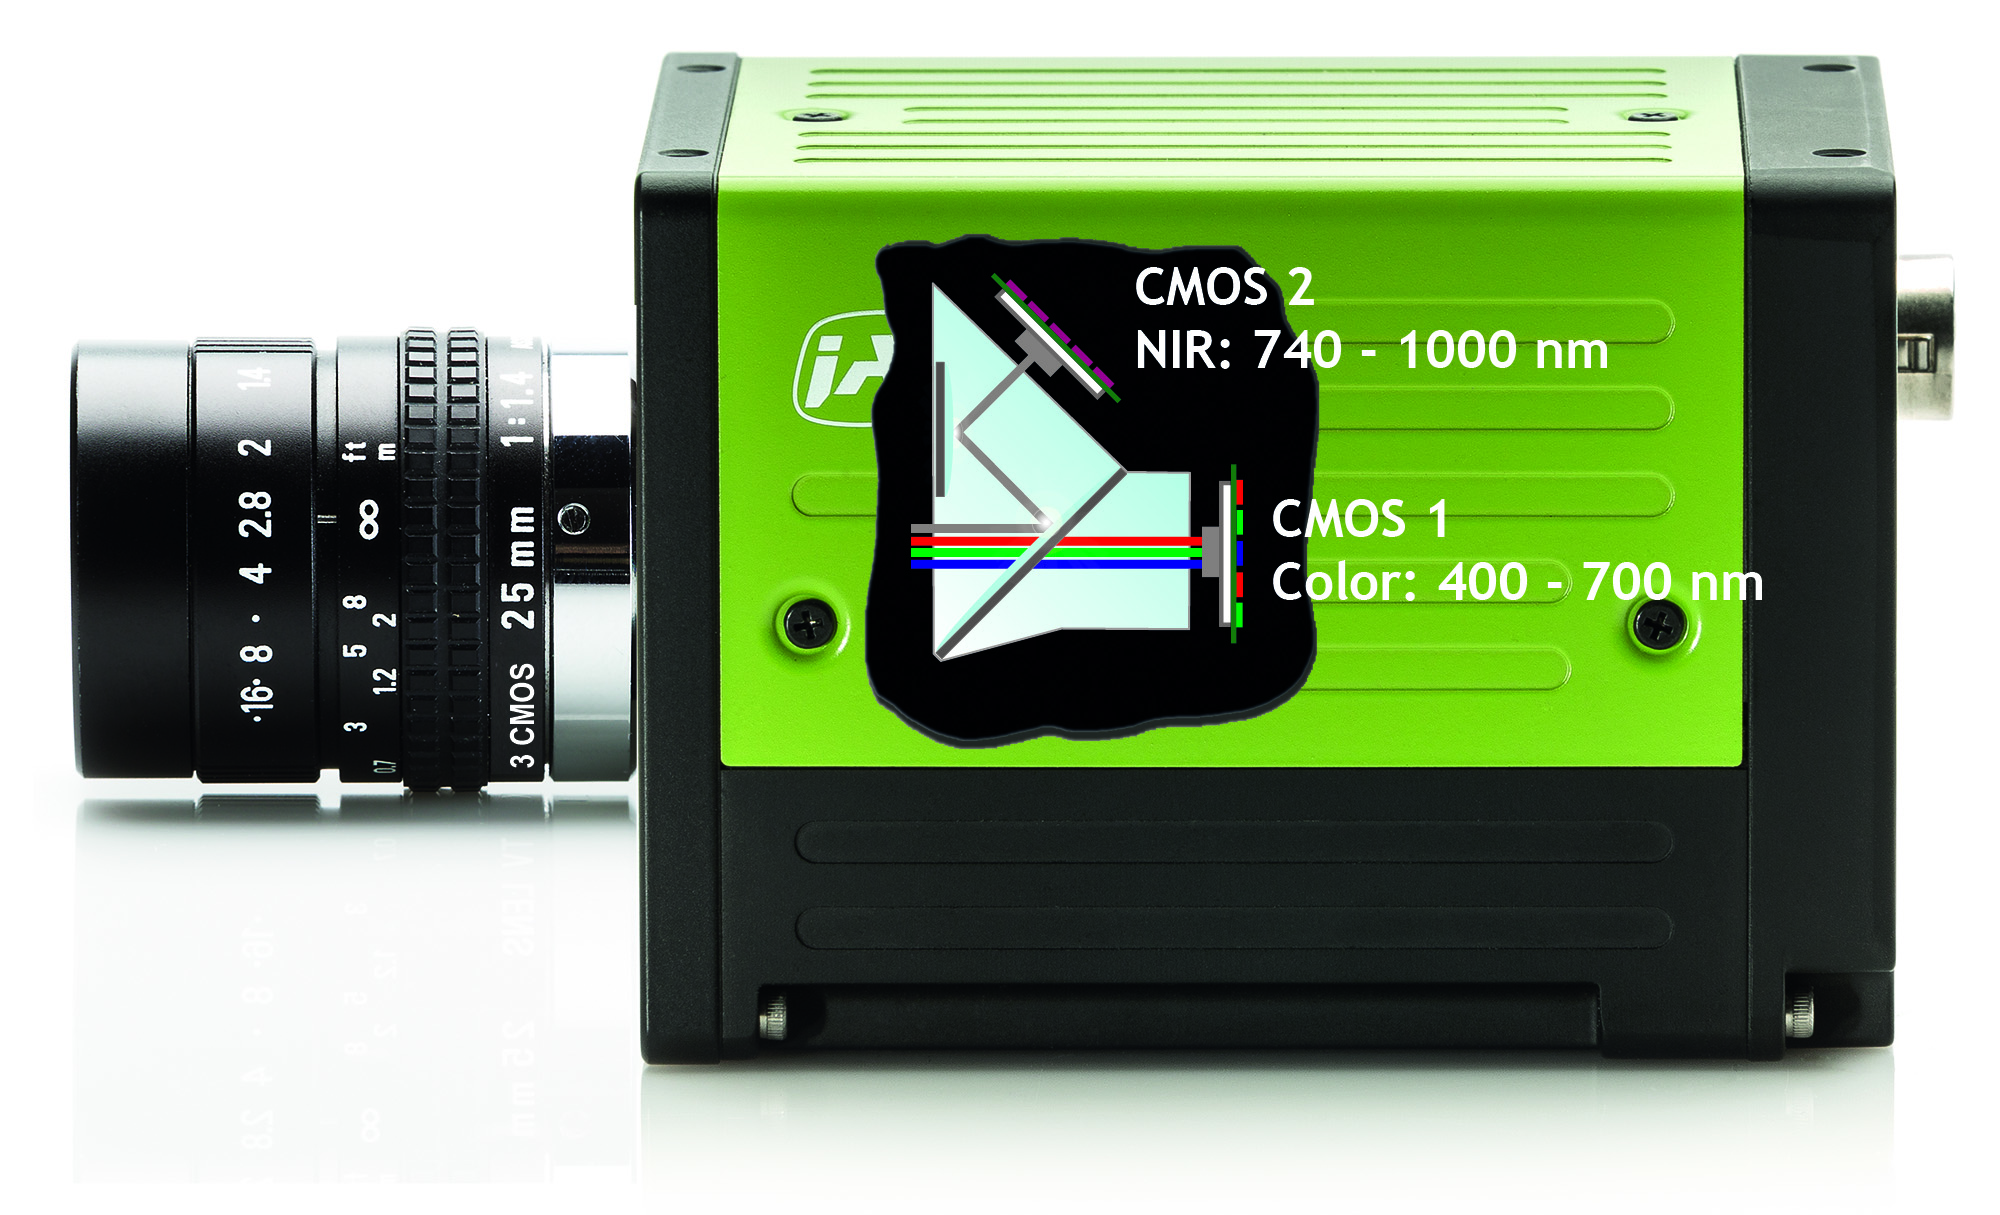 Die Abmessungen der neuen Multispektral-Prismenkameras FS-3200D-10GE und FS-1600D-10GE betragen jeweils 62x62x86,5mm. Beide Kameras unterstützen C-Mount-Objektive. (Bild: JAI A/S)